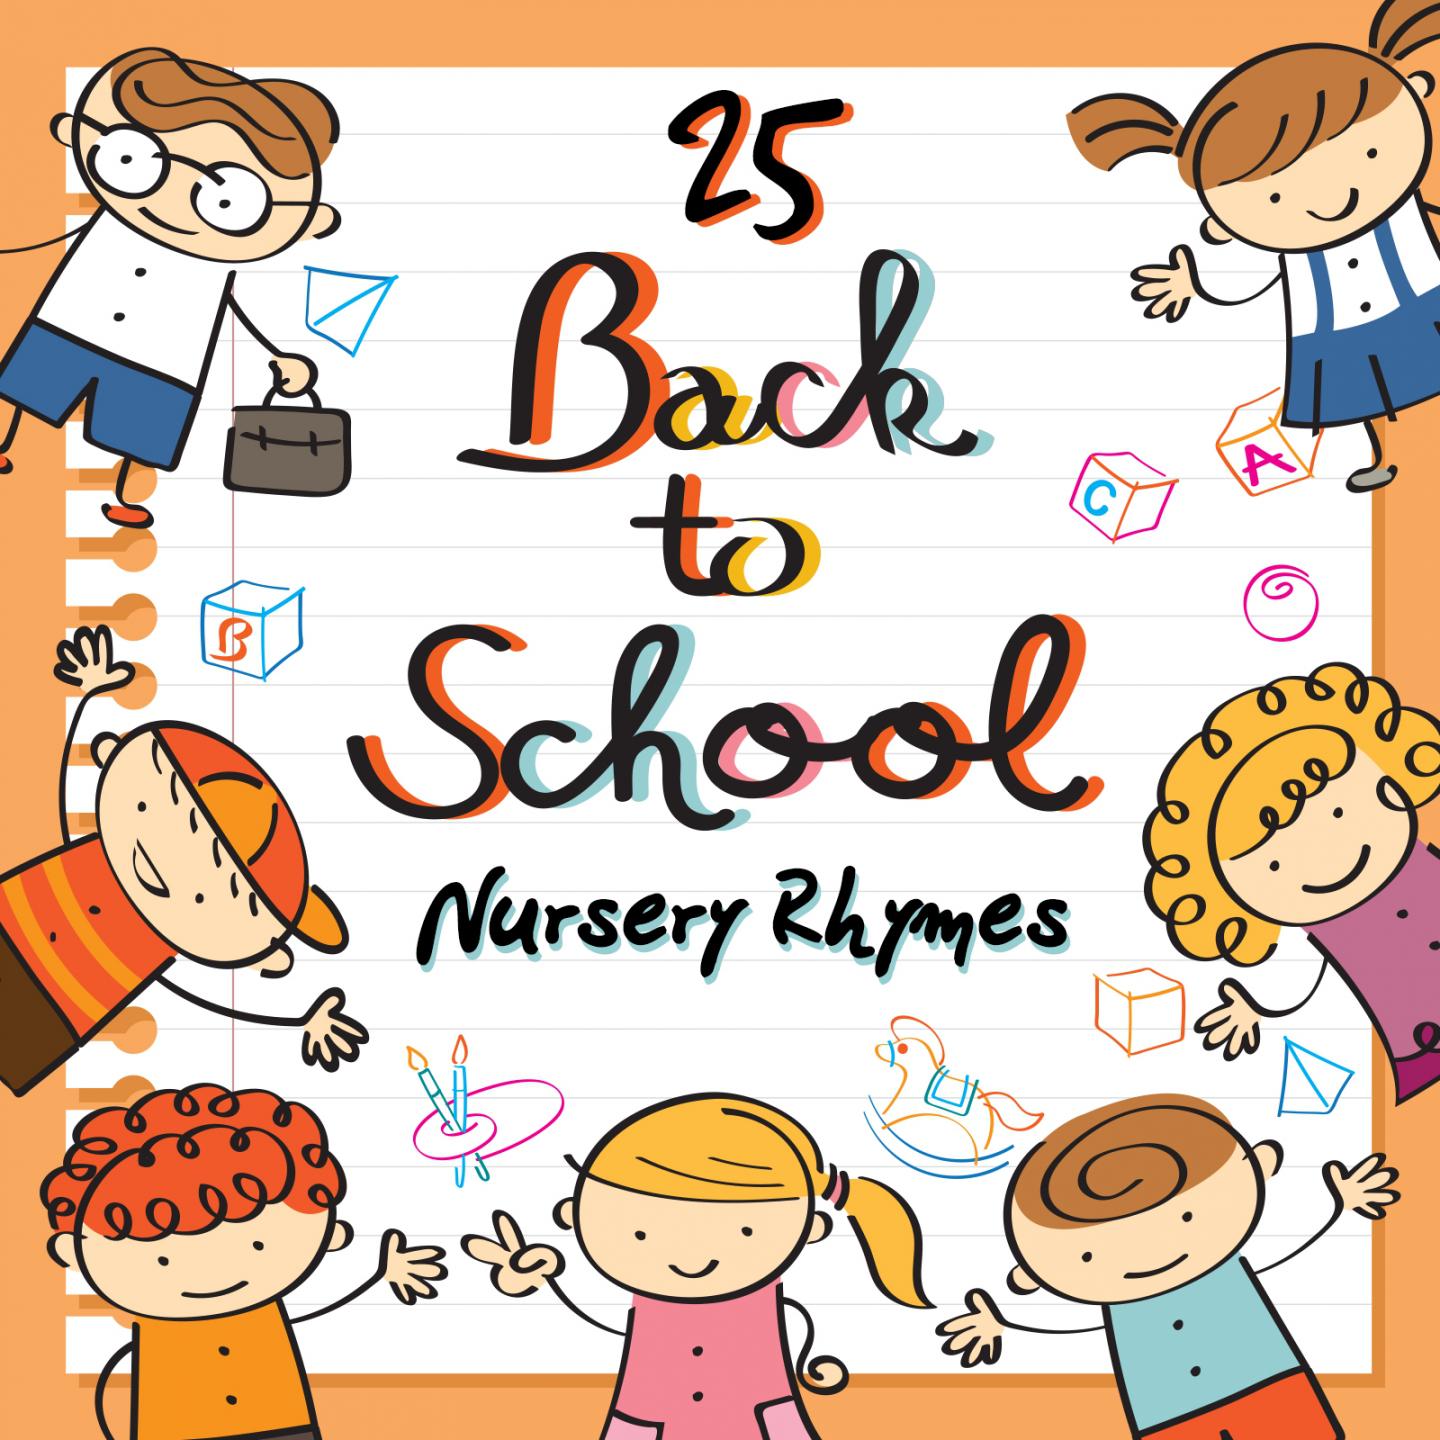 25 Back to School Nursery Rhymes